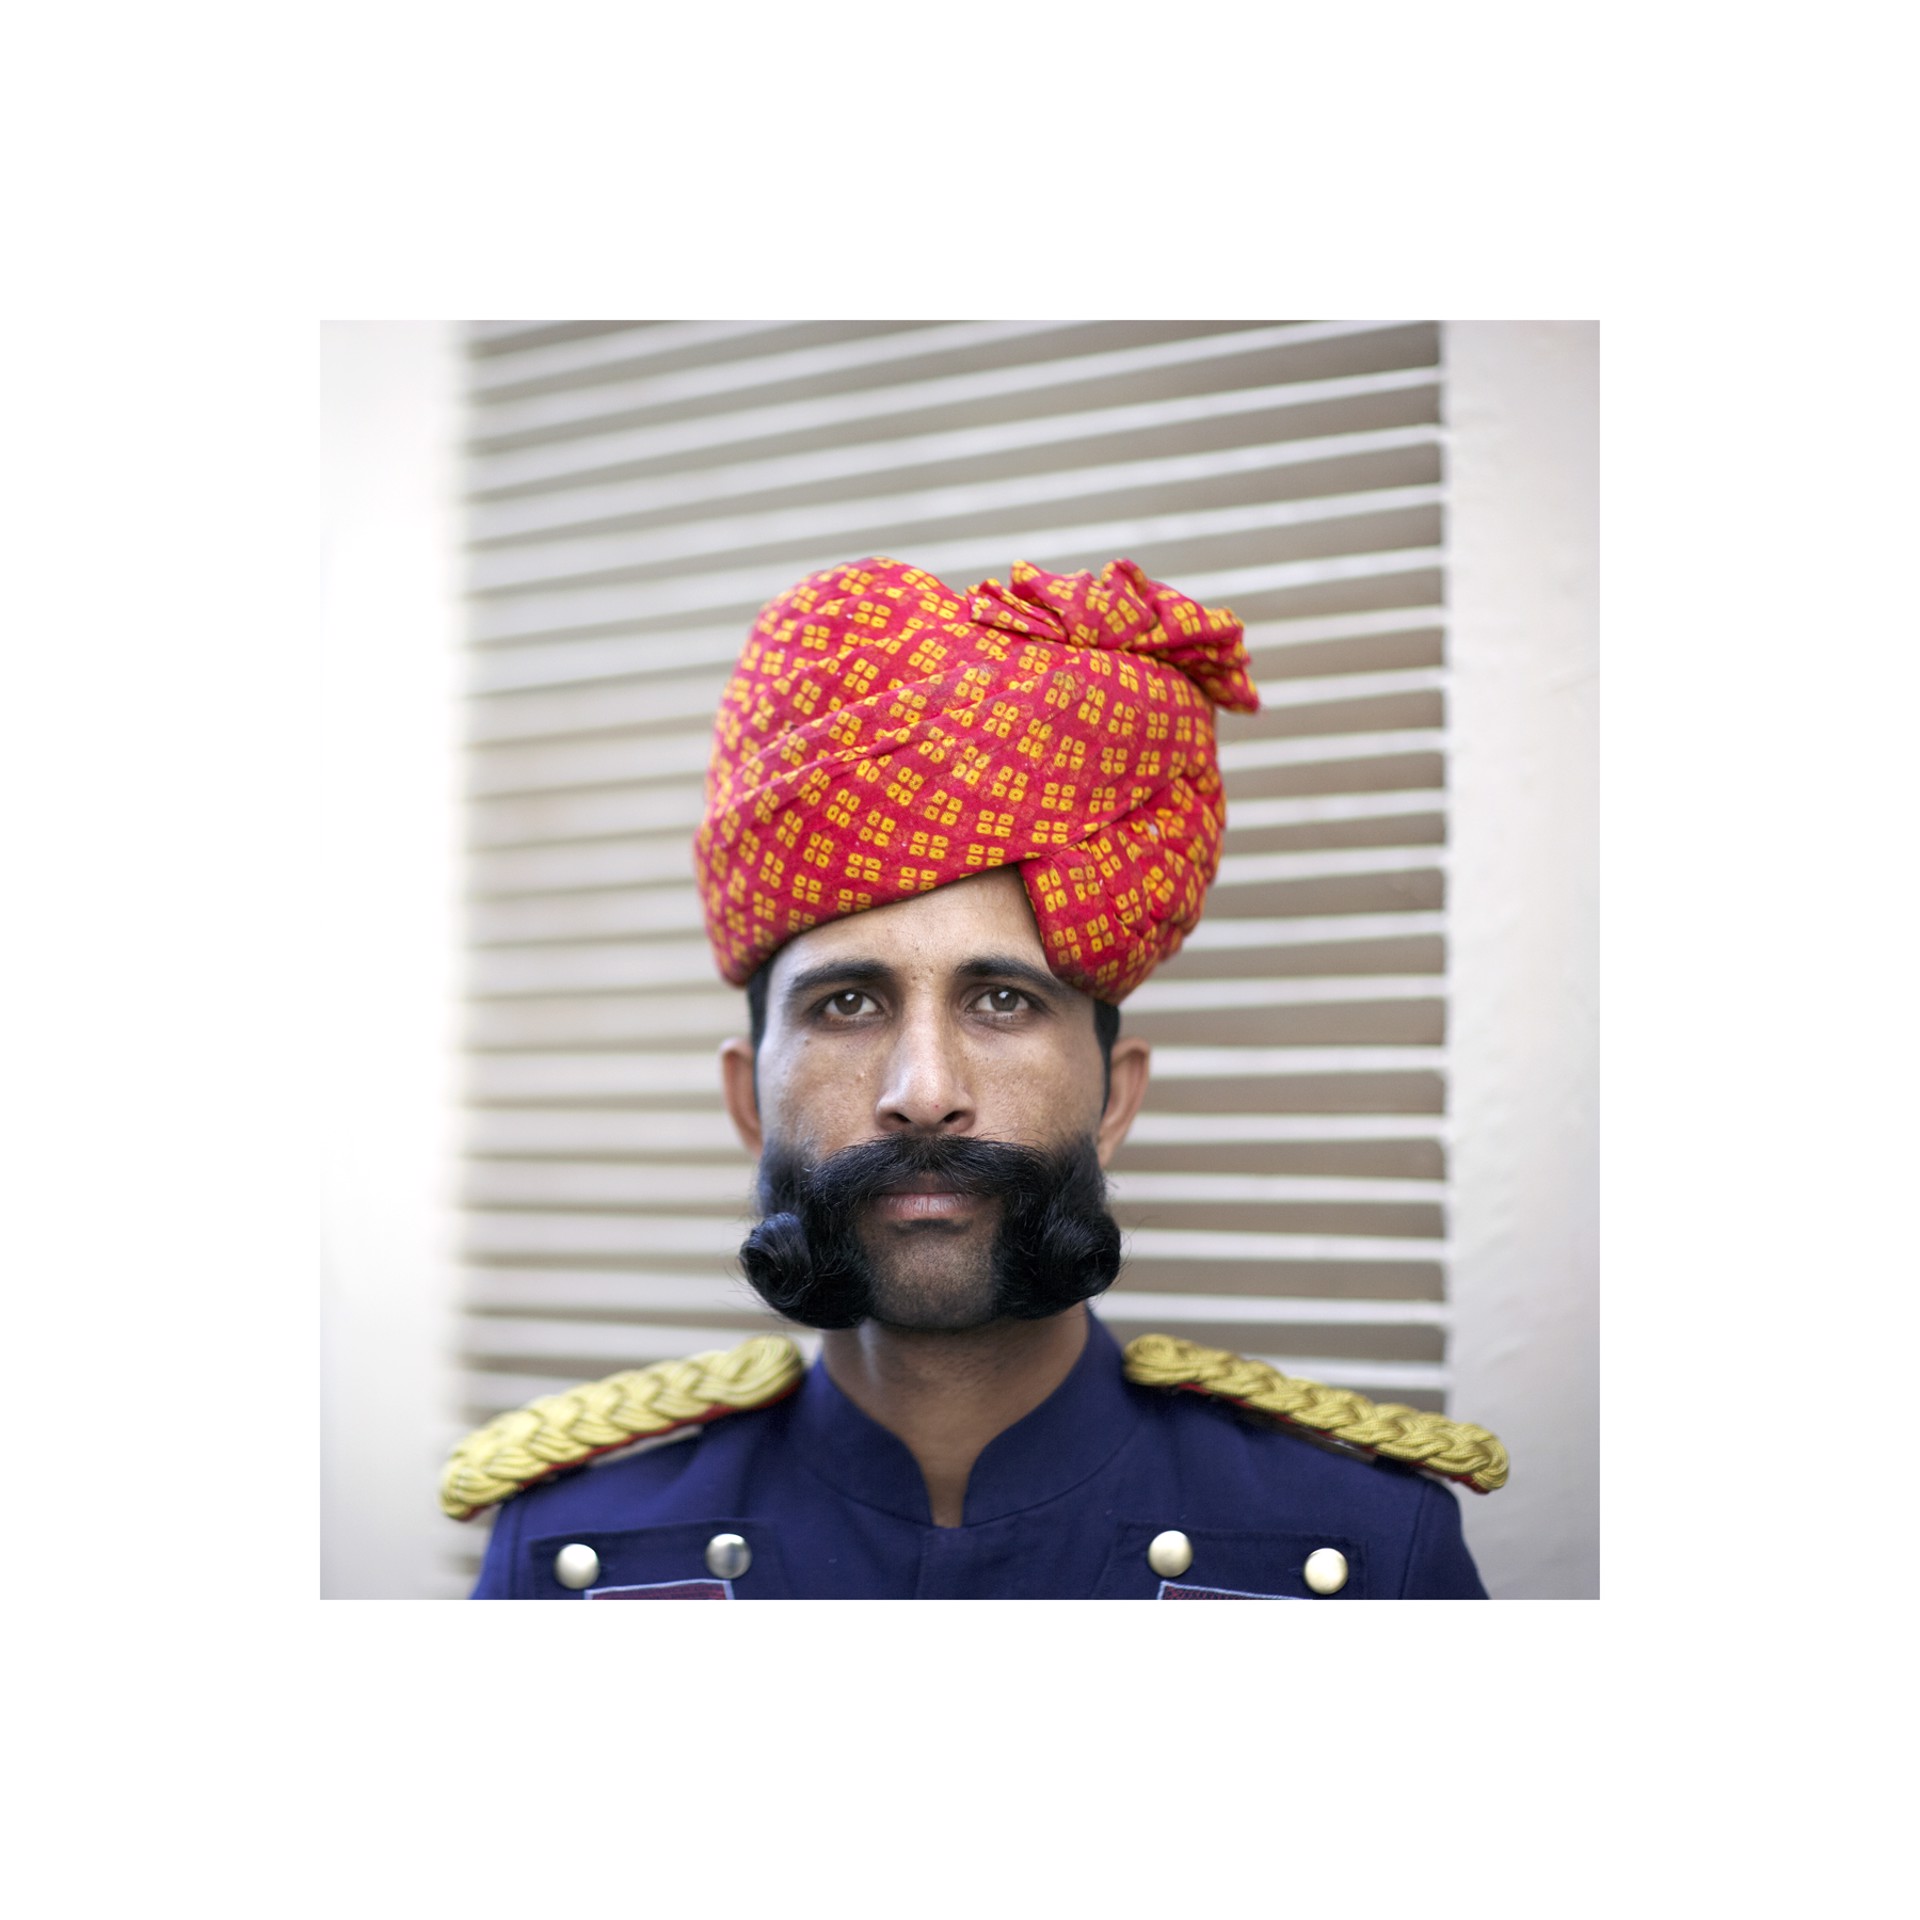 Rajasthan Man One by David Hillegas